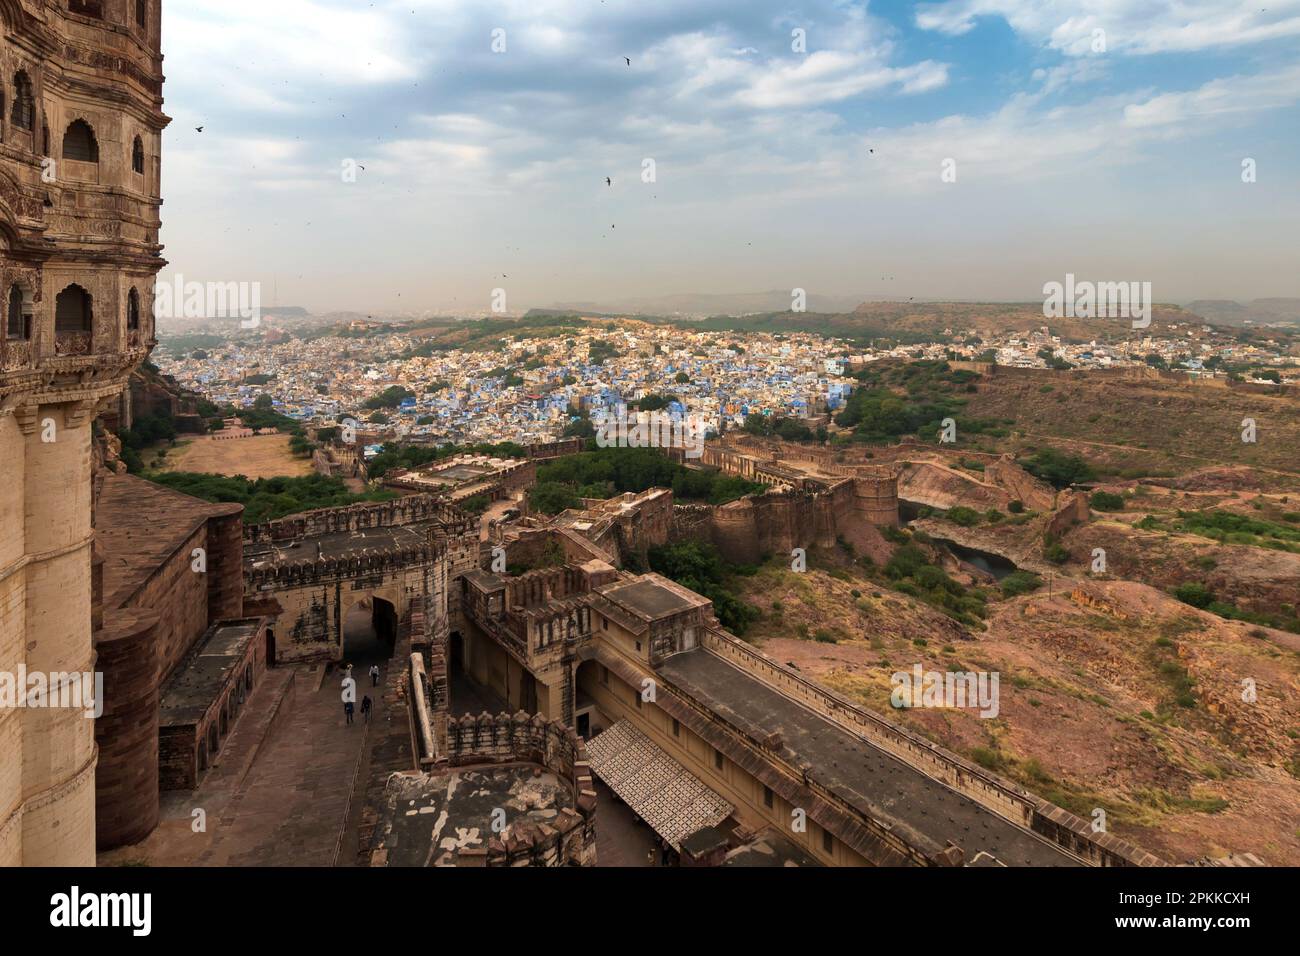 Vue sur le fort de Mehrangarh avec vue lointaine de la ville bleue Jodhpur, Rajasthan, Inde. Le fort historique est classé au patrimoine mondial de l'UNESCO. Ciel bleu et nuages. Banque D'Images